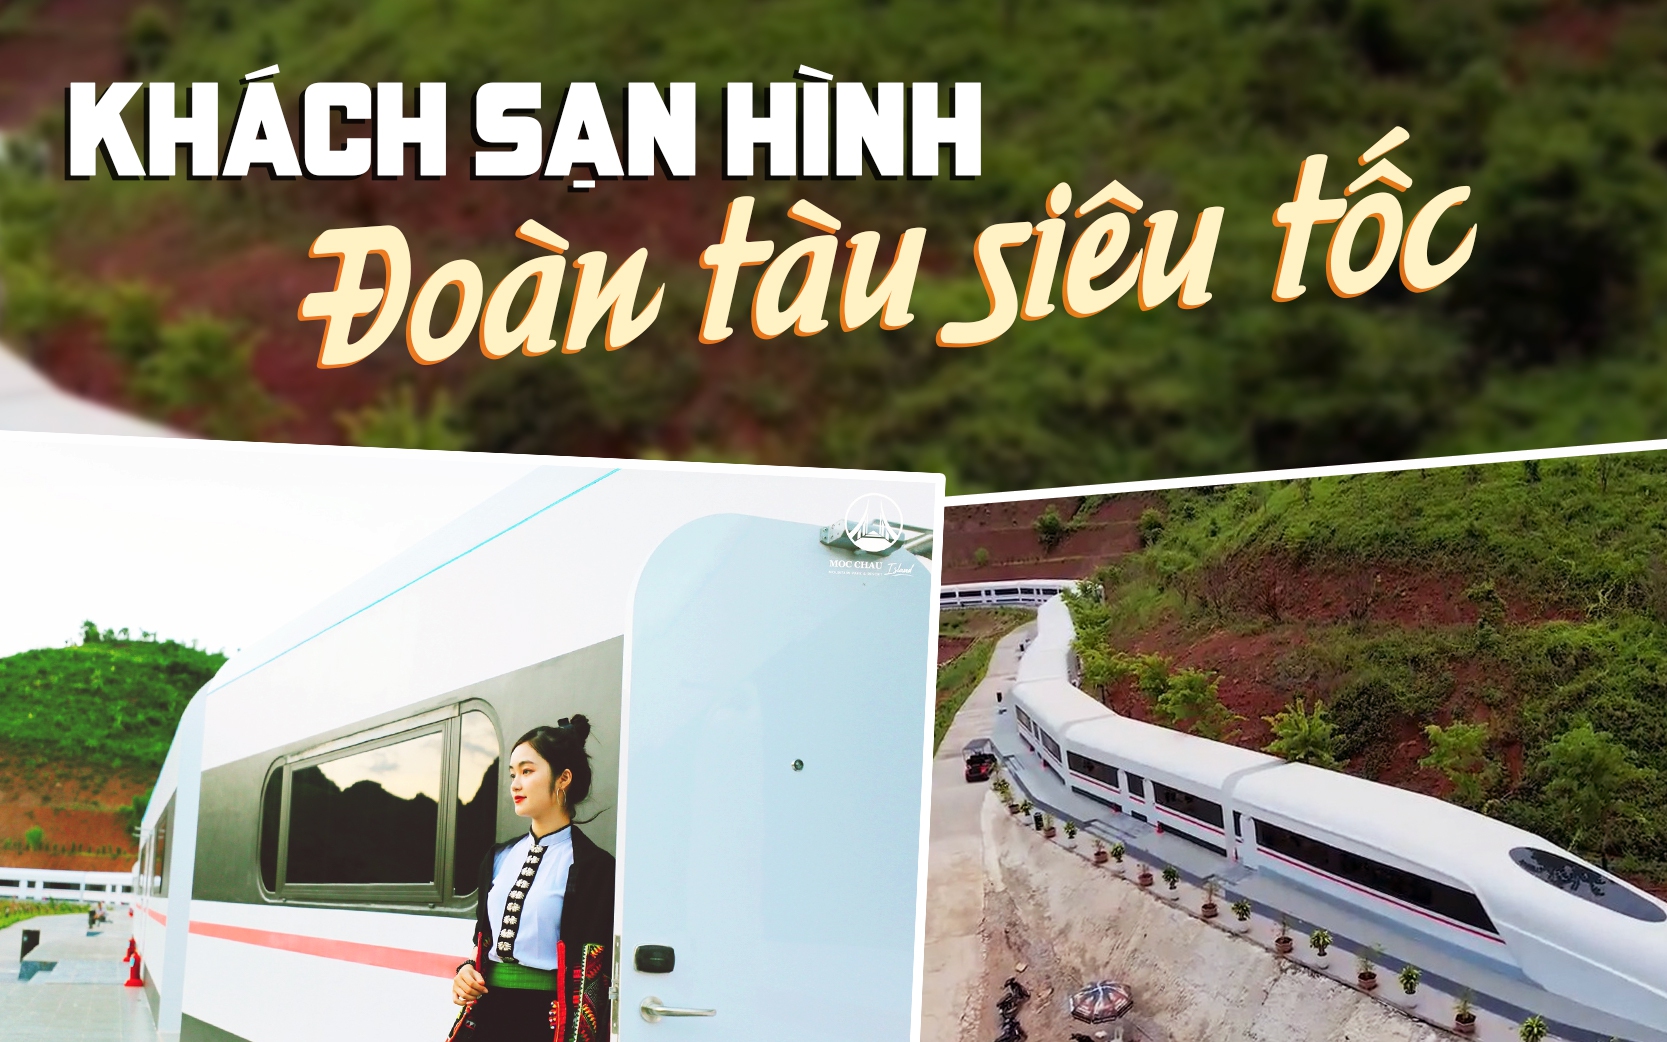 Xuất hiện khách sạn hình đoàn tàu siêu tốc ở Việt Nam nằm ngay gần cầu  kính đi bộ dài nhất thế giới